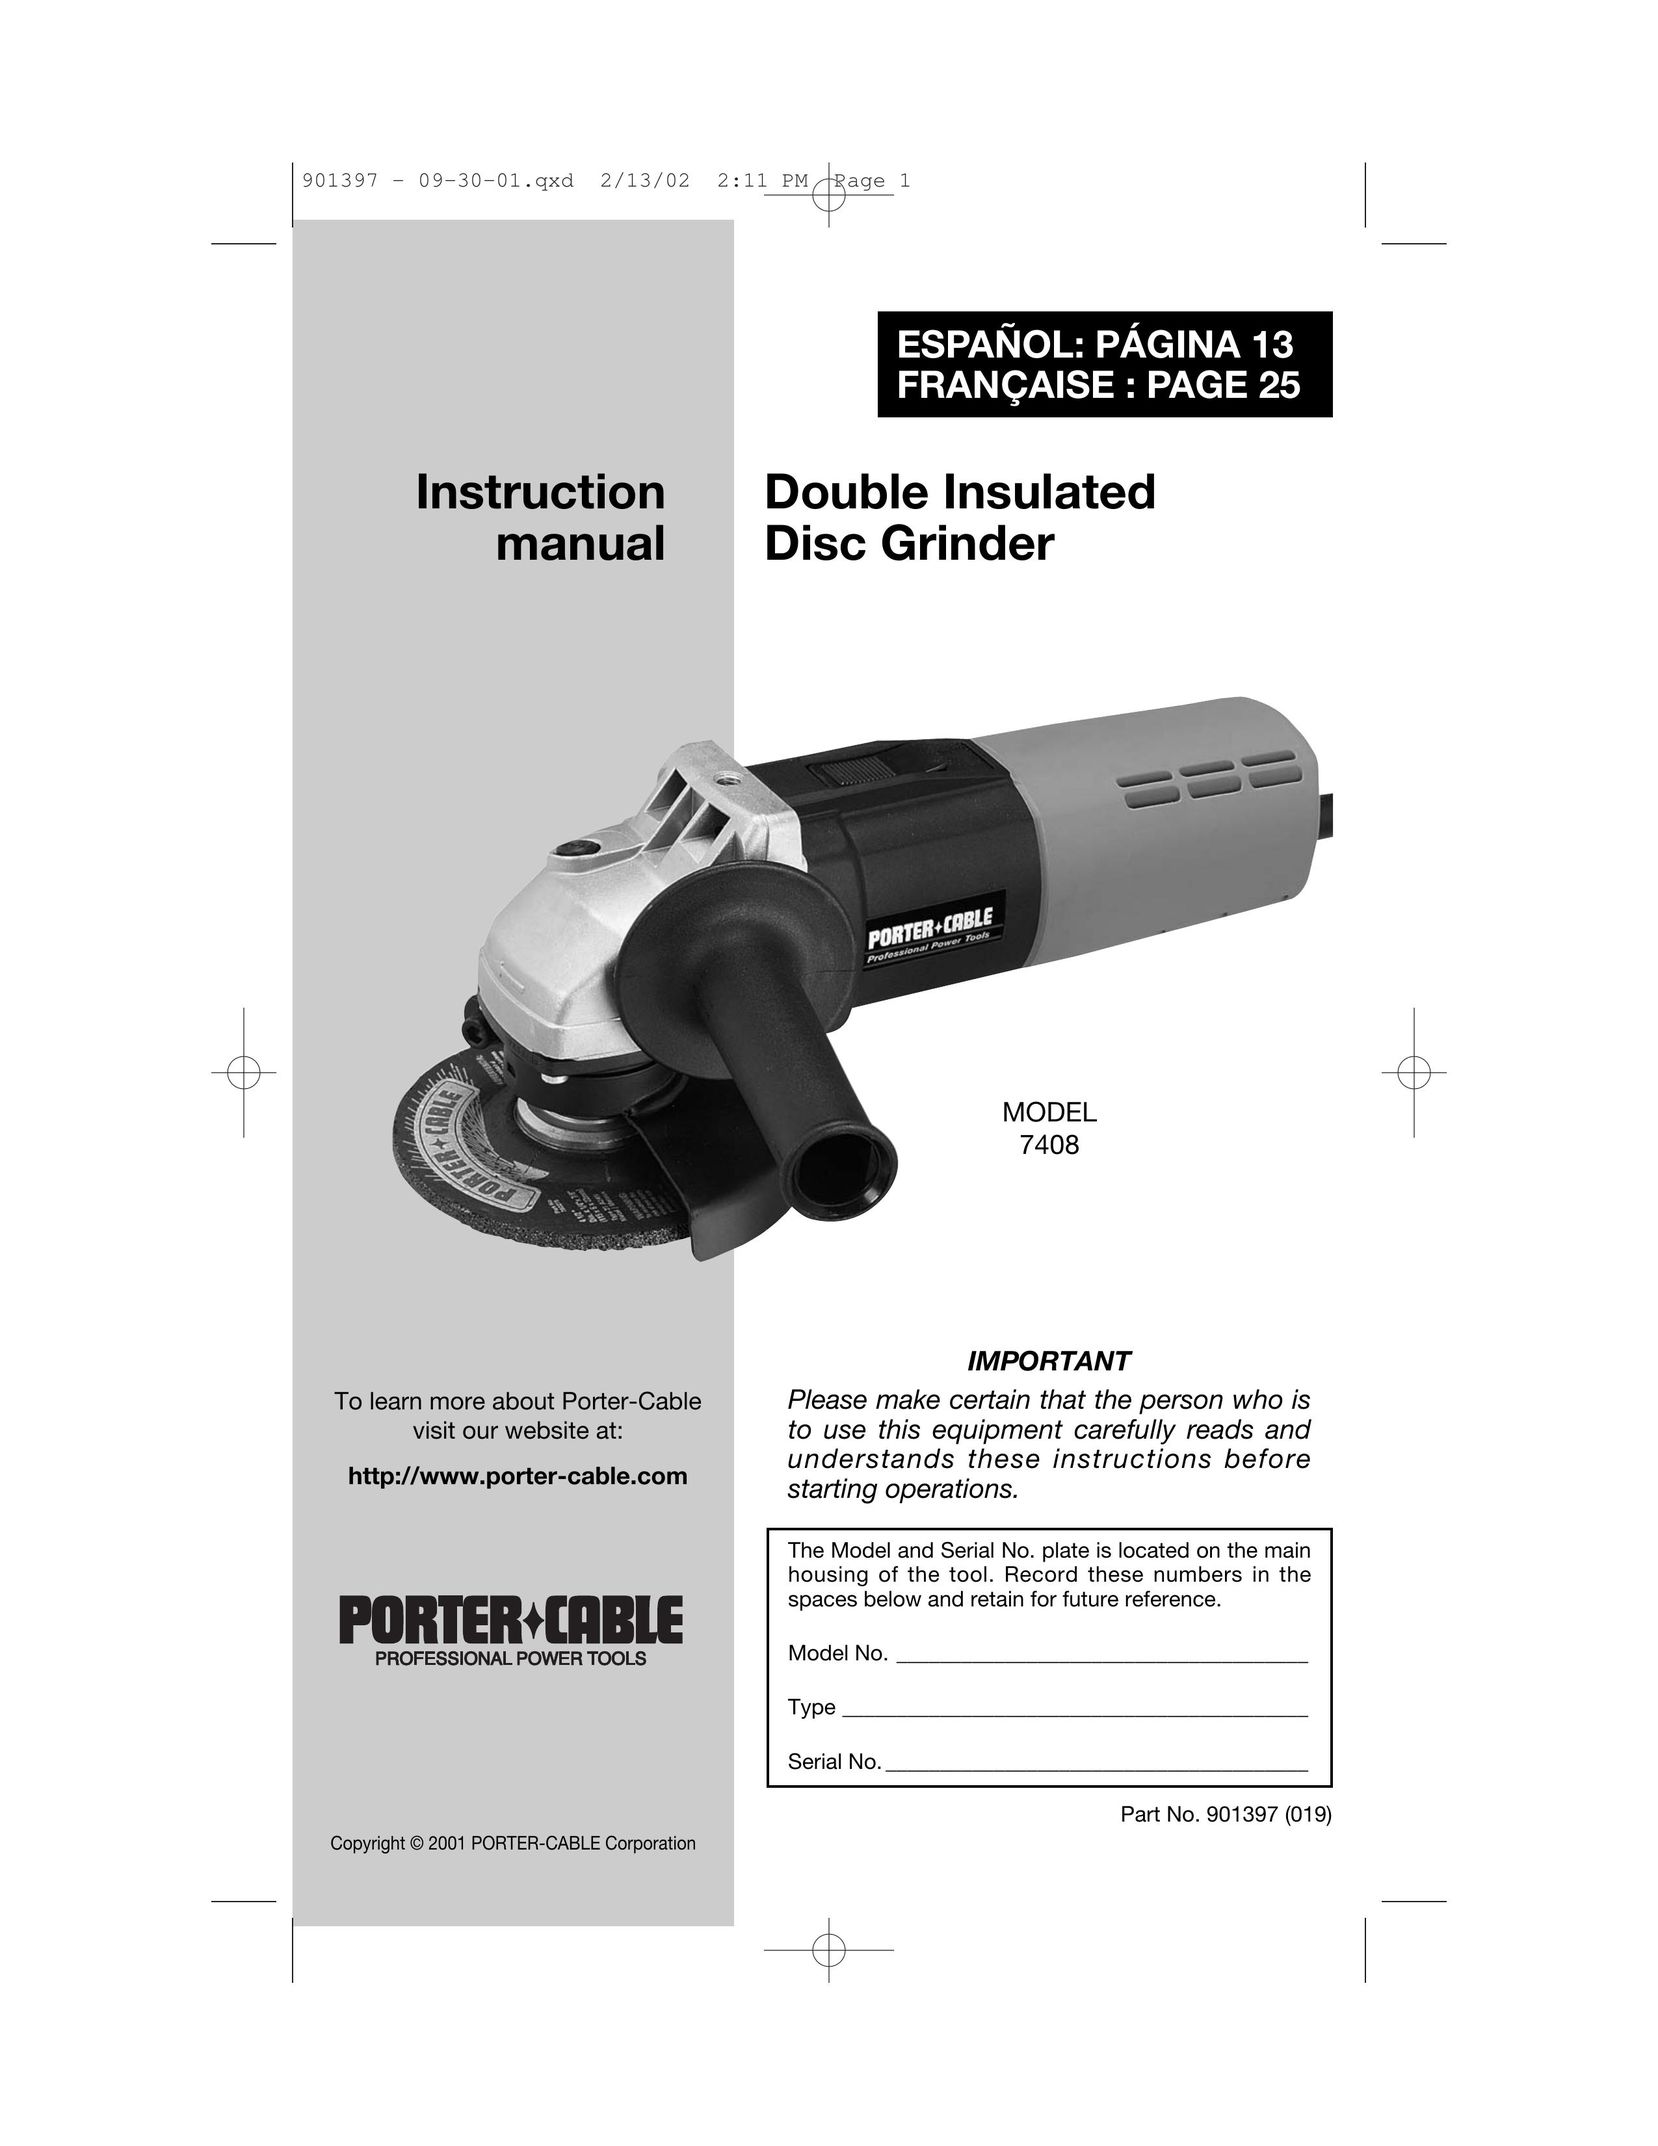 DeWalt 7408 Grinder User Manual